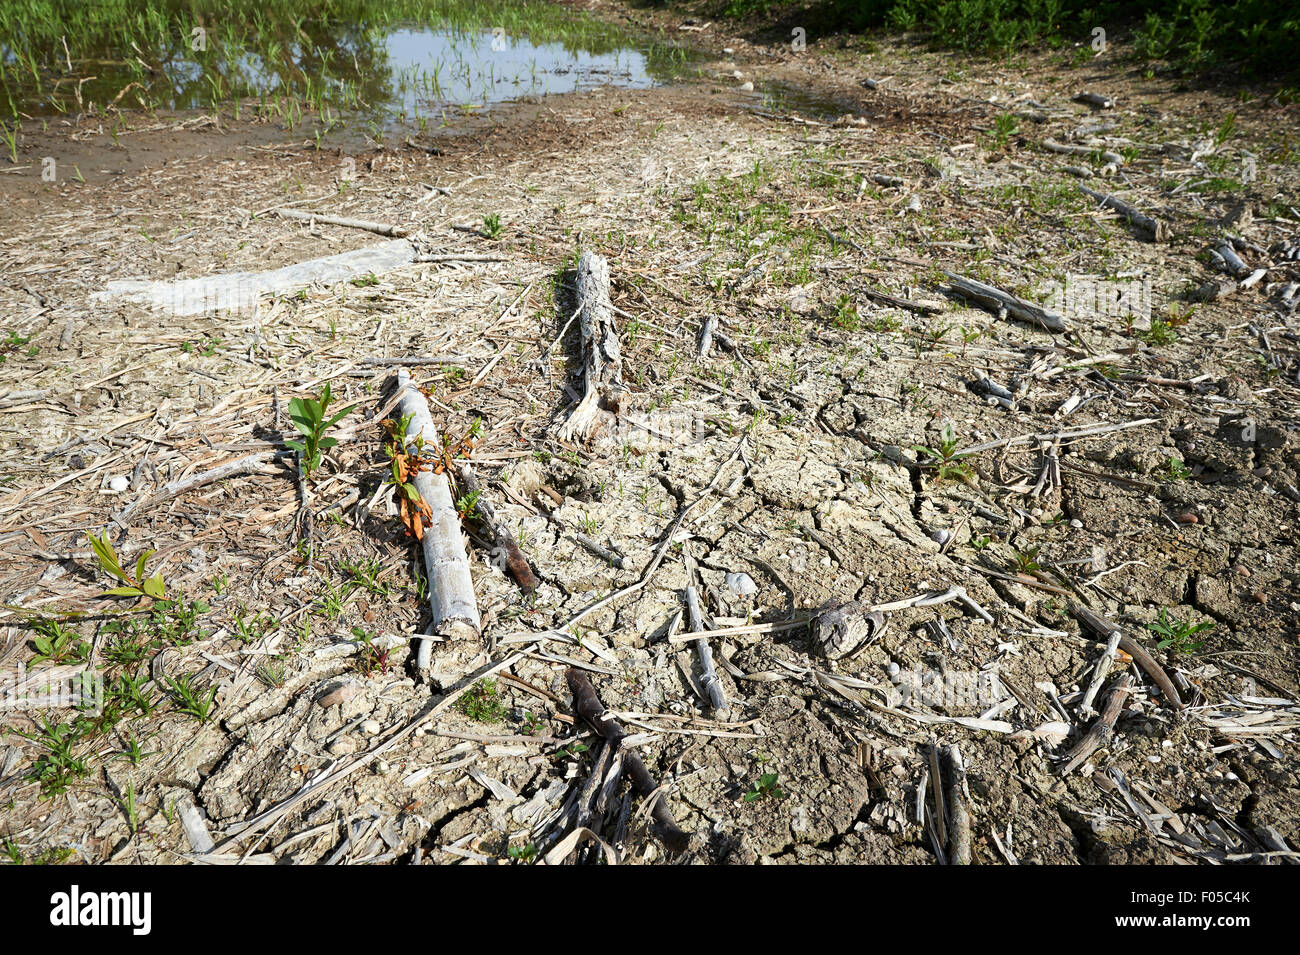 Exponierten Basis der Erhaltung Lebensraum Teich auf landwirtschaftlichen Flächen mit niedrigem Wasserstand aufgrund der Trockenheit. Stockfoto